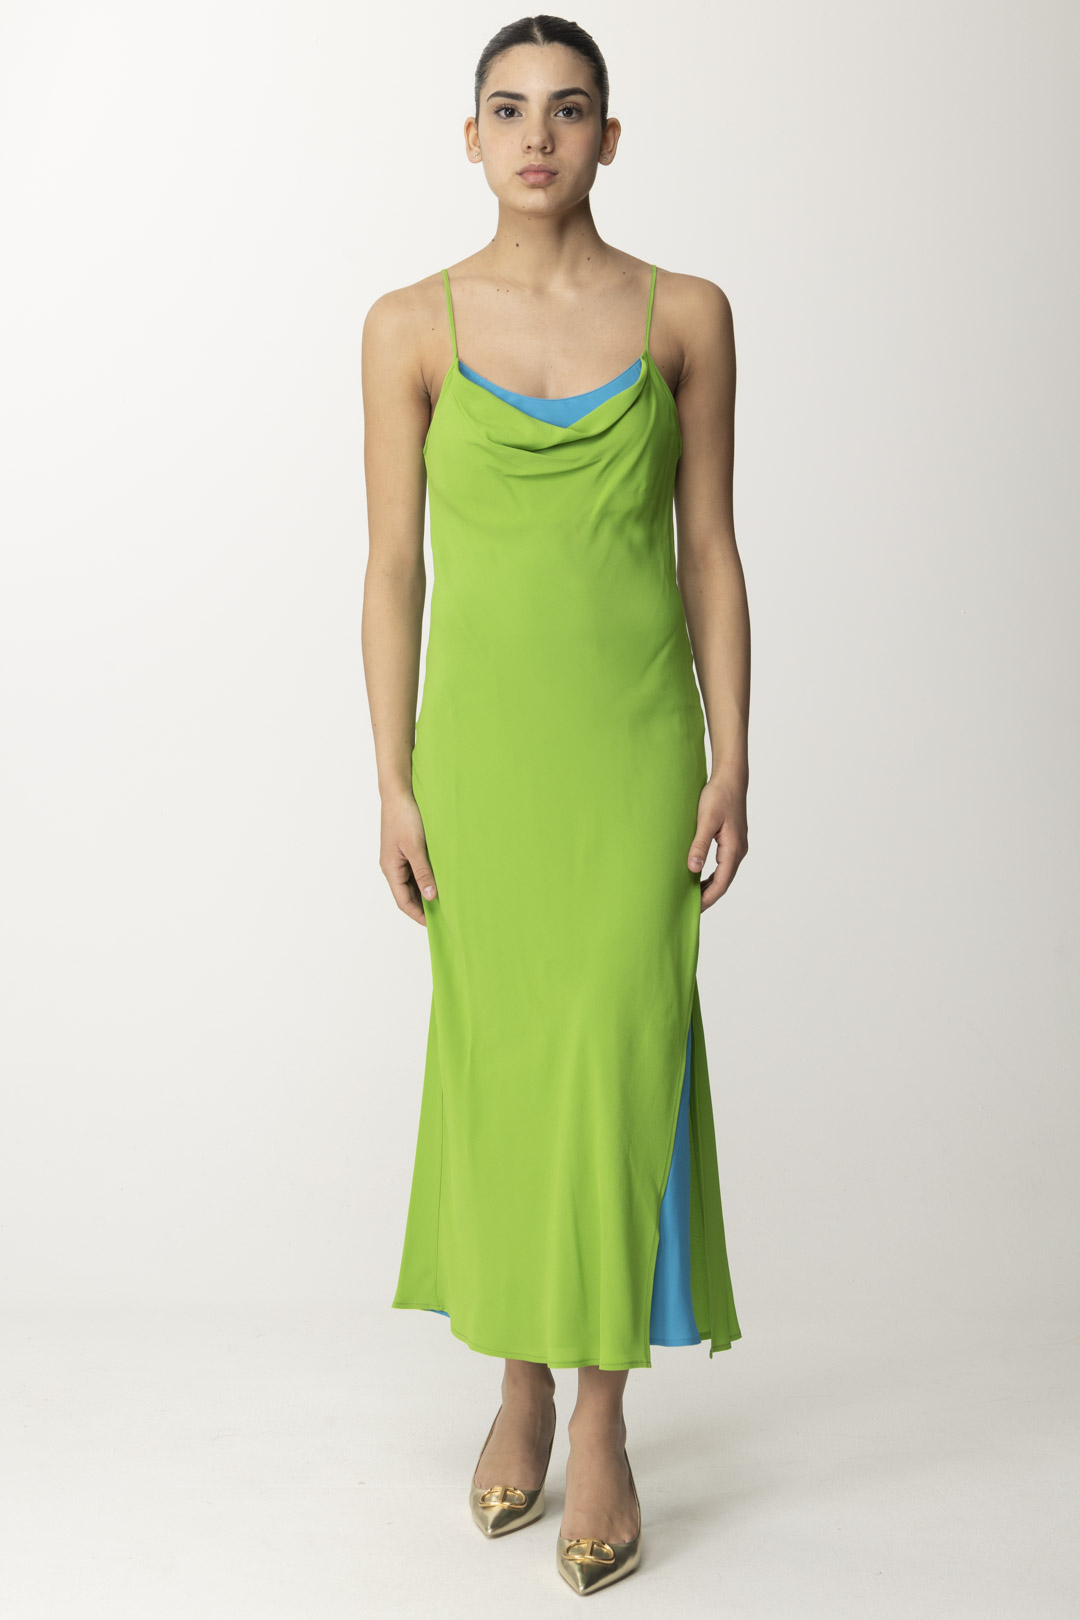 Vorschau: Semicouture Zweifarbiges Kleid aus Crêpe de Chine von Adelina Linfa / Summer